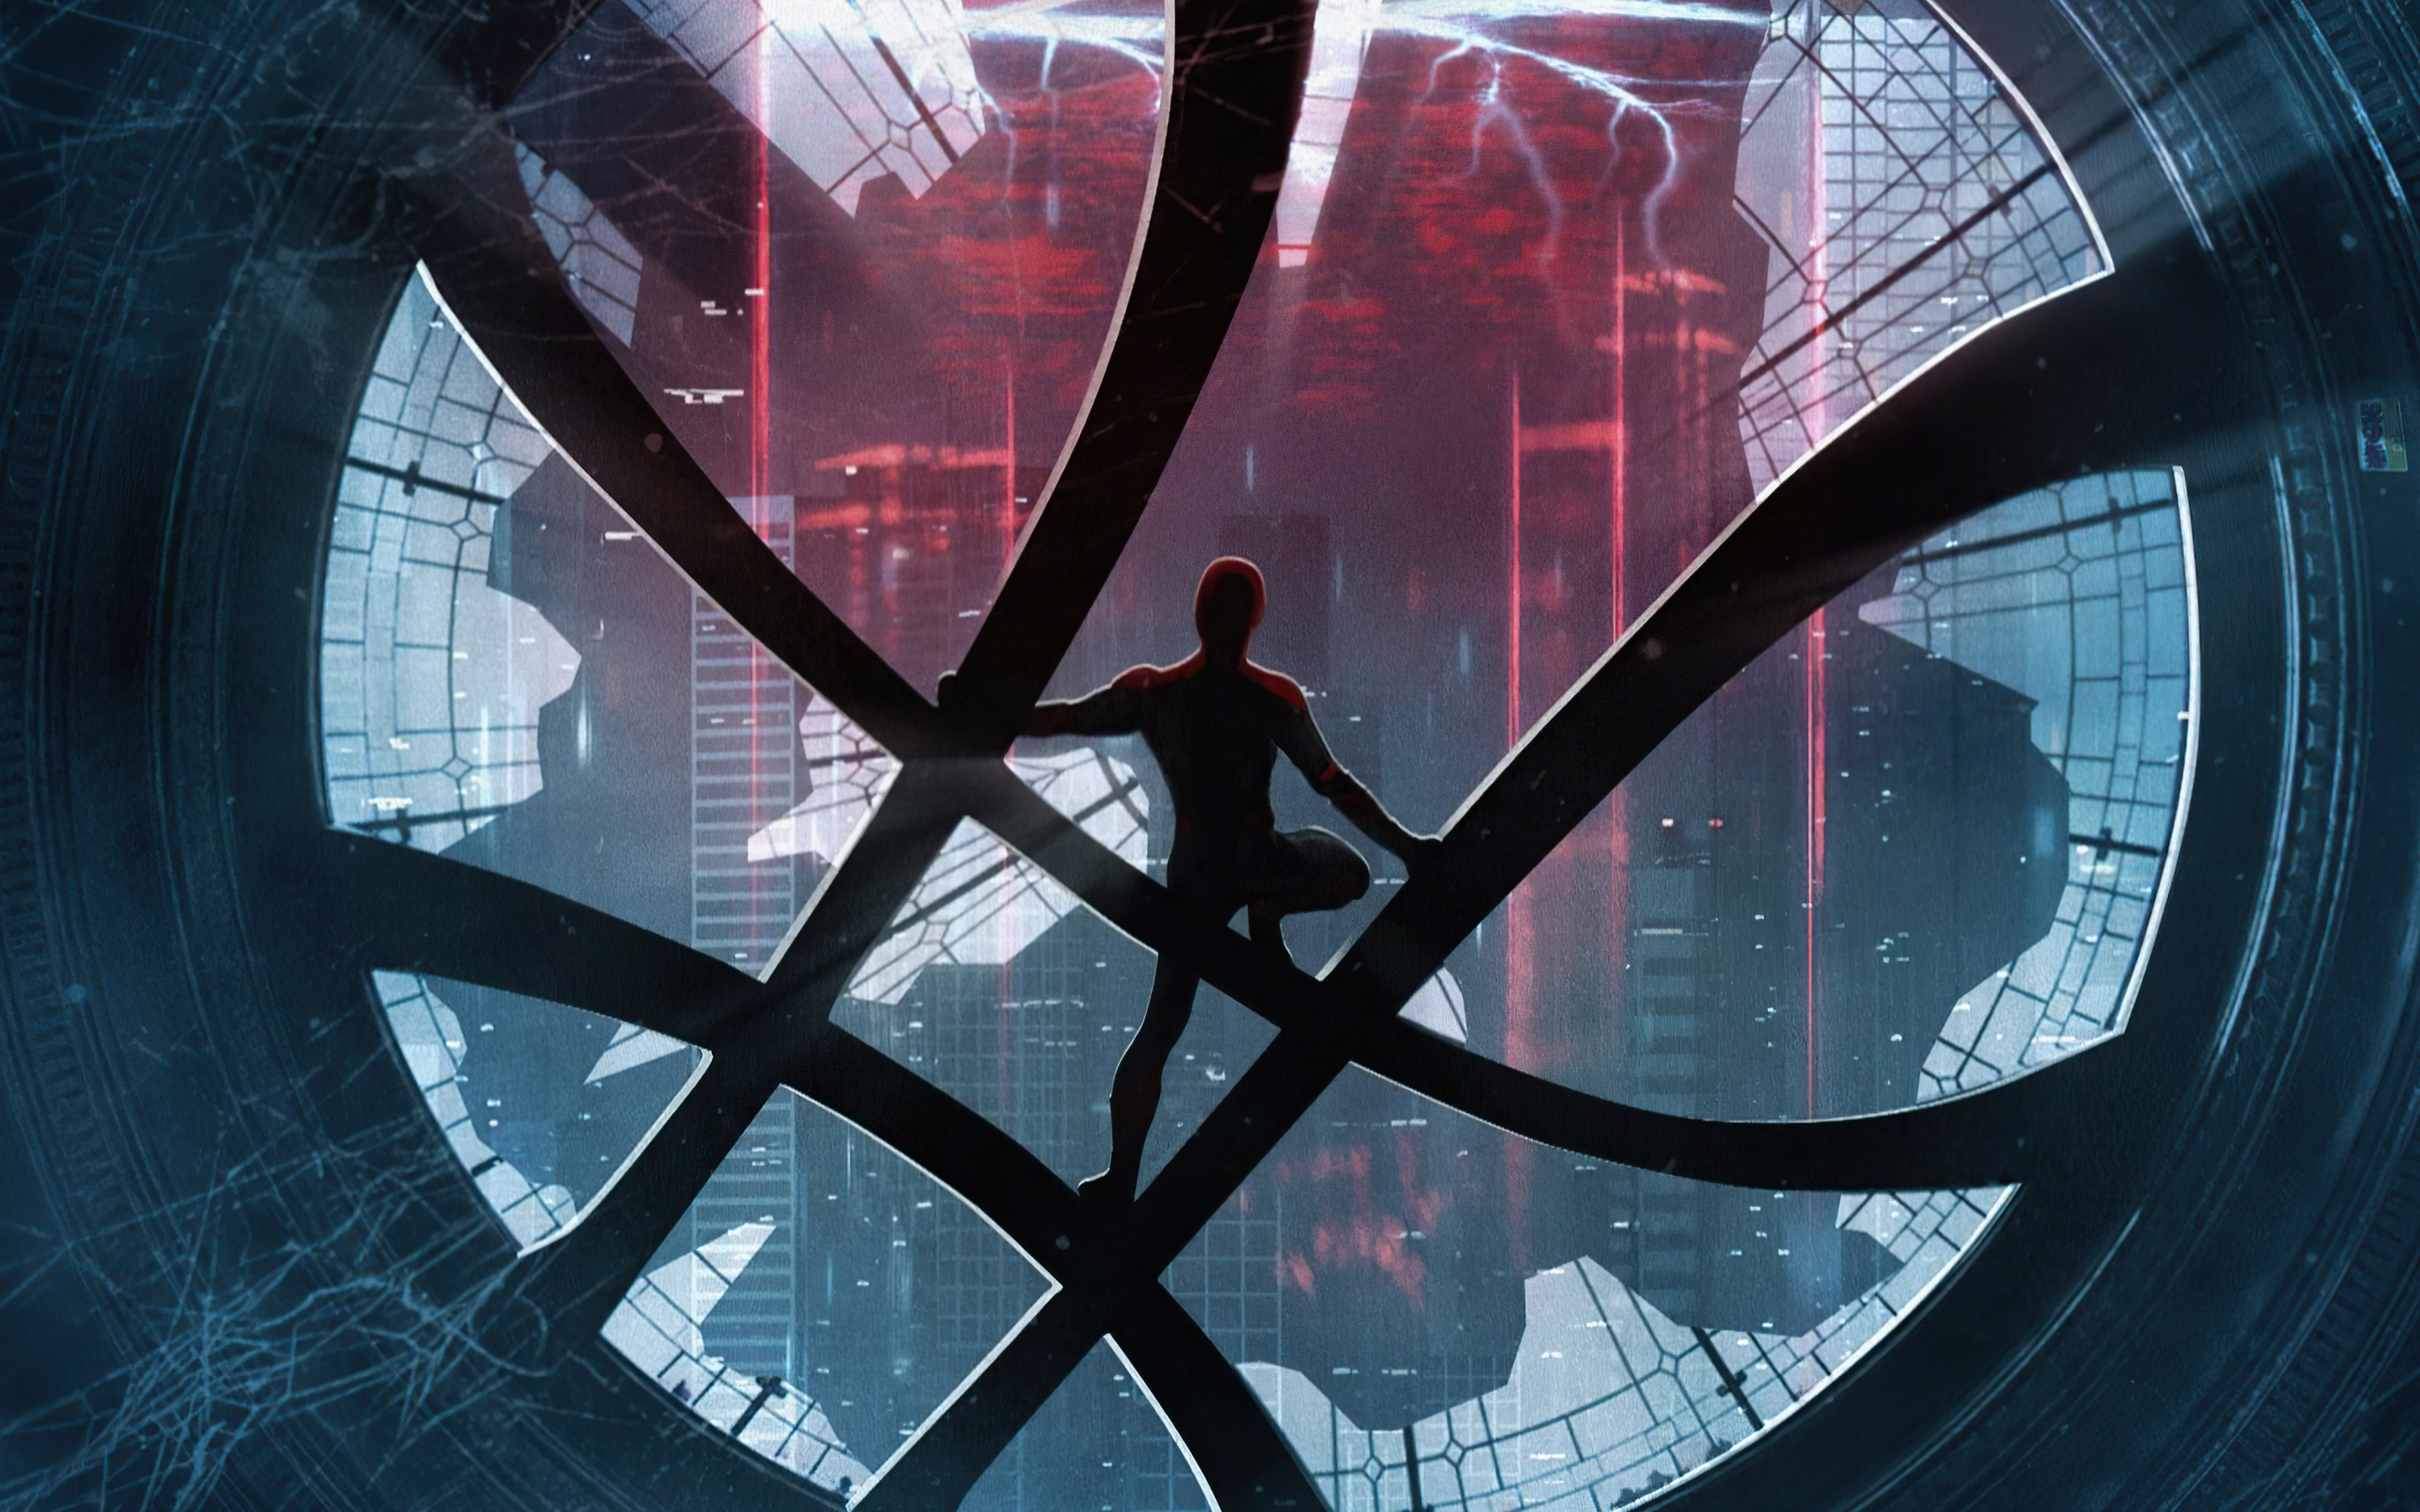 Spider-Man: No Way Home, spider-man, movie, 2021, fan art, 2880x1800 wallpaper